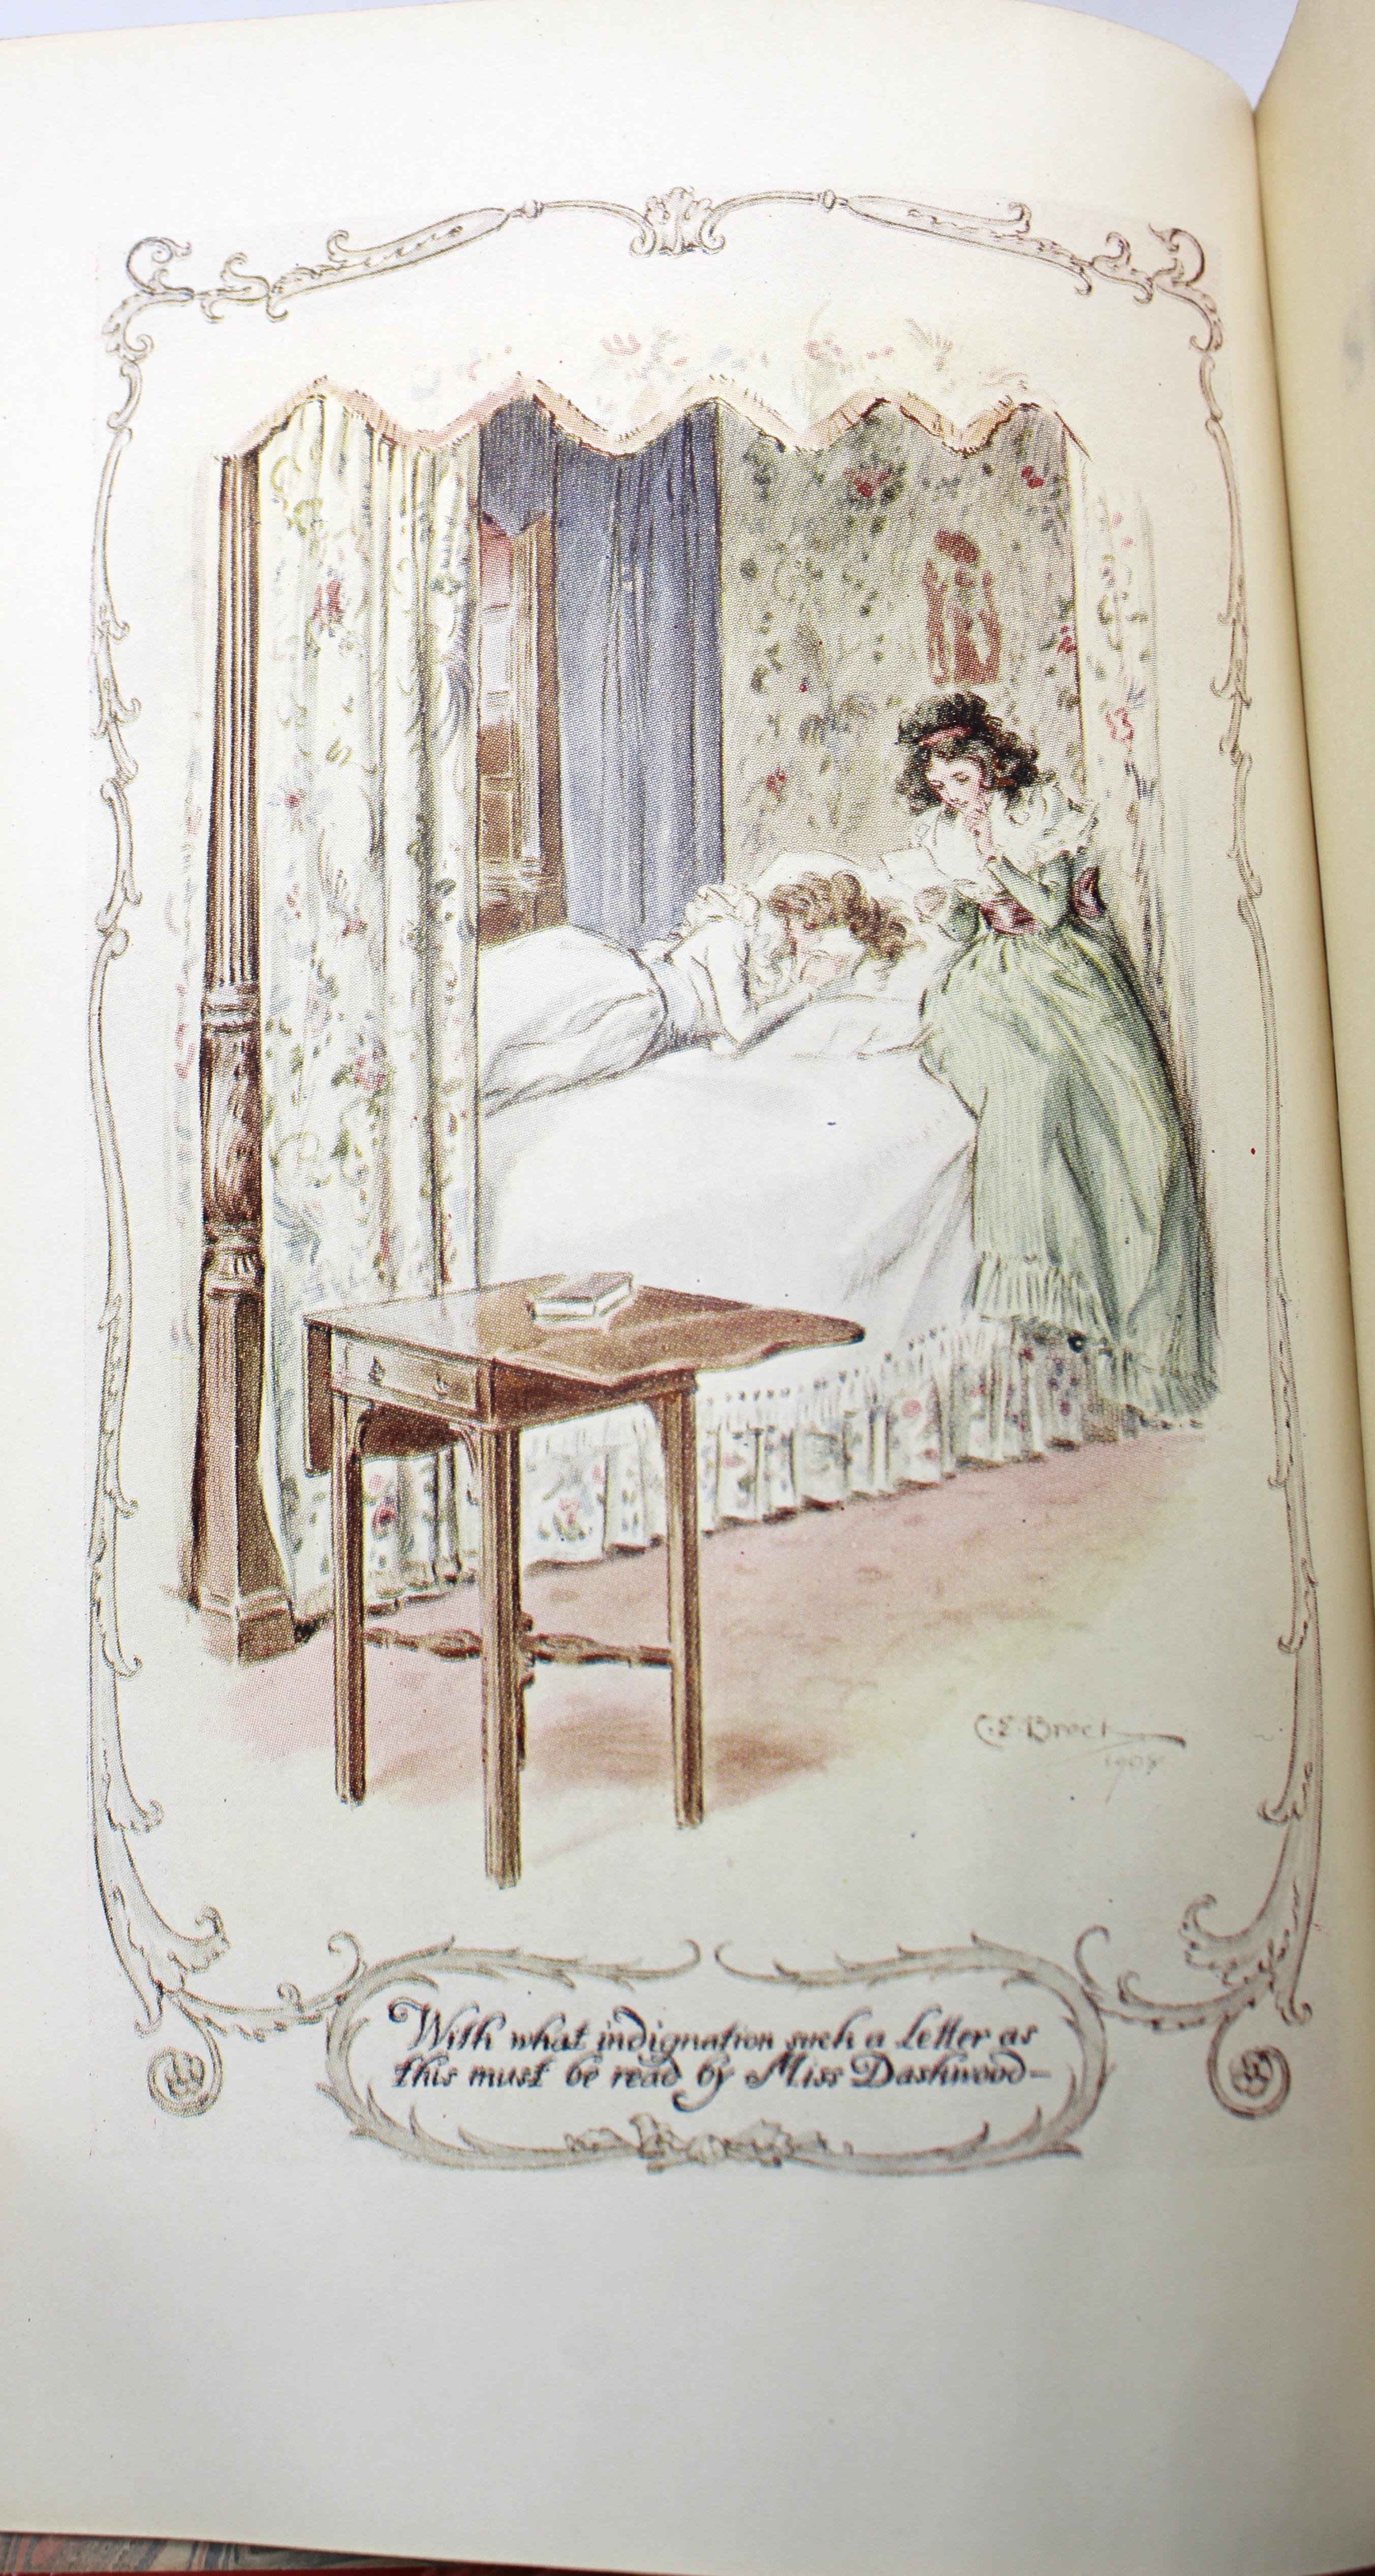 Jane Austen's Werke, herausgegeben von Robert Riviere & Son, fünf Bände, 1920er Jahre (Leder)